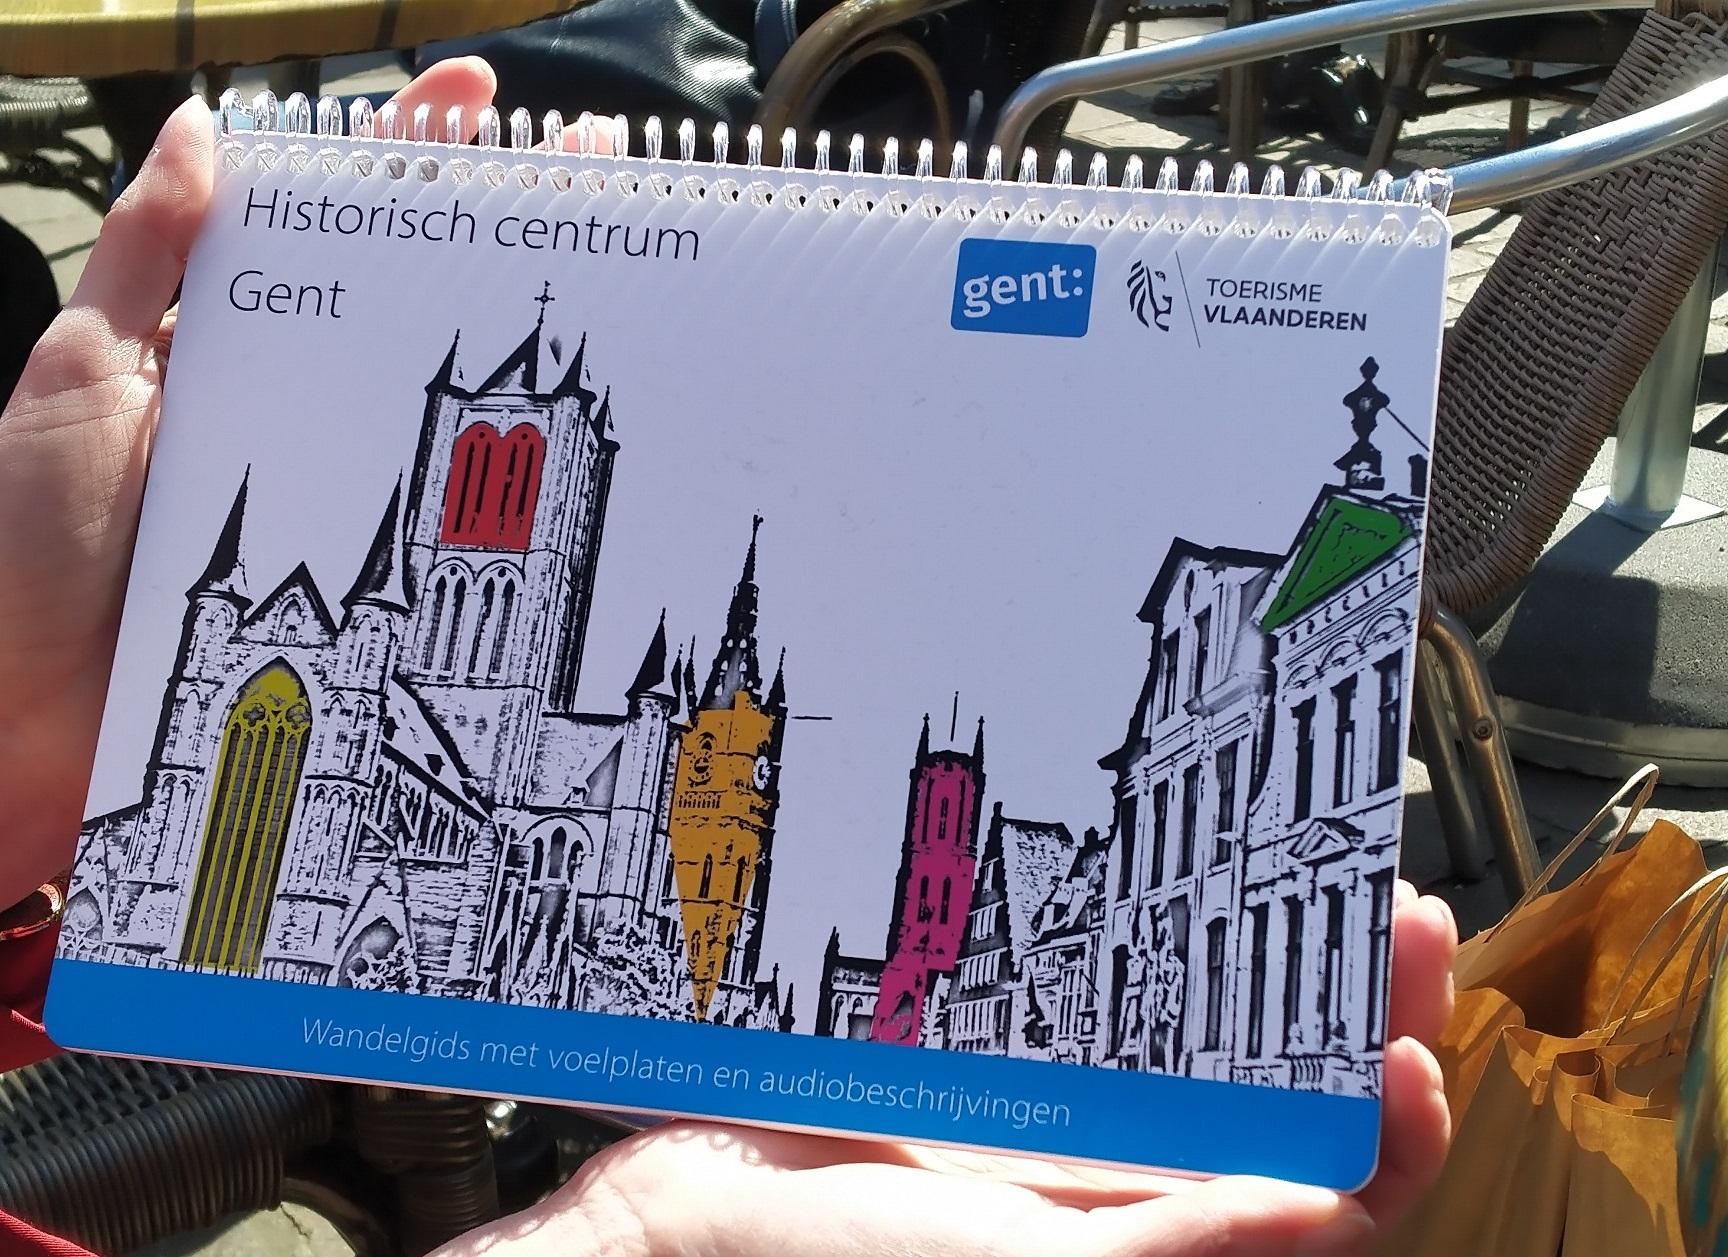 De voorkant van de wandelgids met een afbeelding van de drie torens en de tekst: Historisch centrum Gent - wandelgids met voelplaten en audiobeschrijvingen